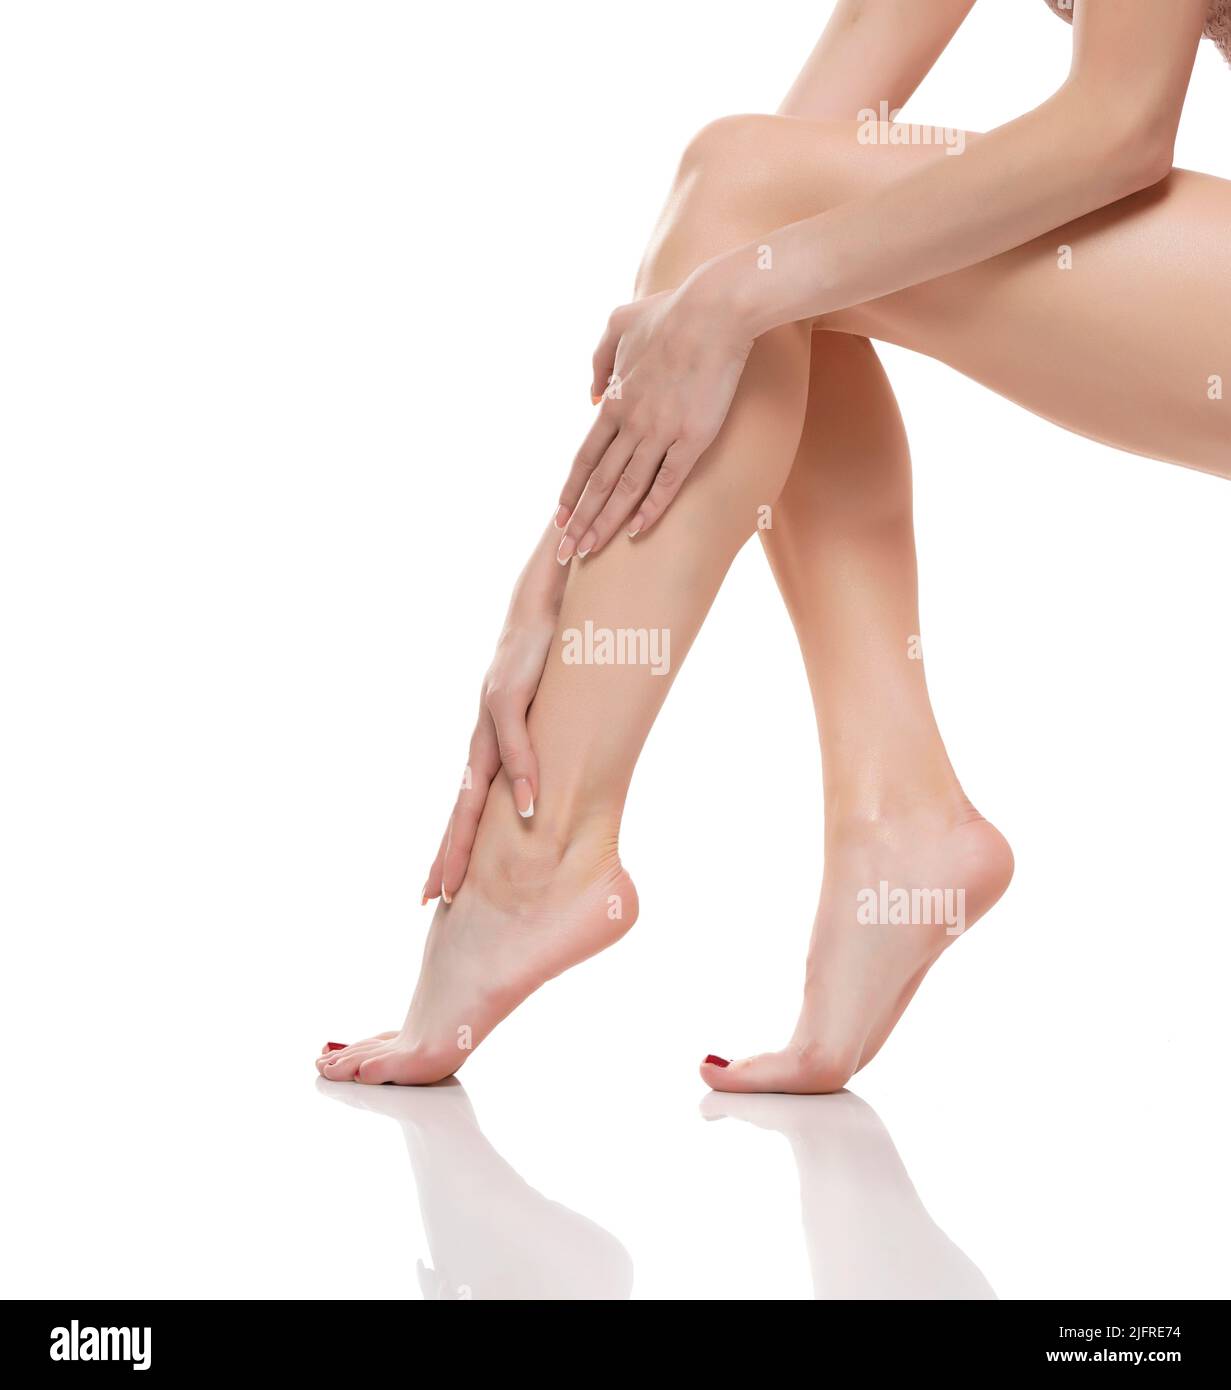 Die junge Frau berührte ihre glatten langen Beine und setzte nach dem Rasieren ihrer Beine eine Feuchtigkeitscreme auf. Stockfoto